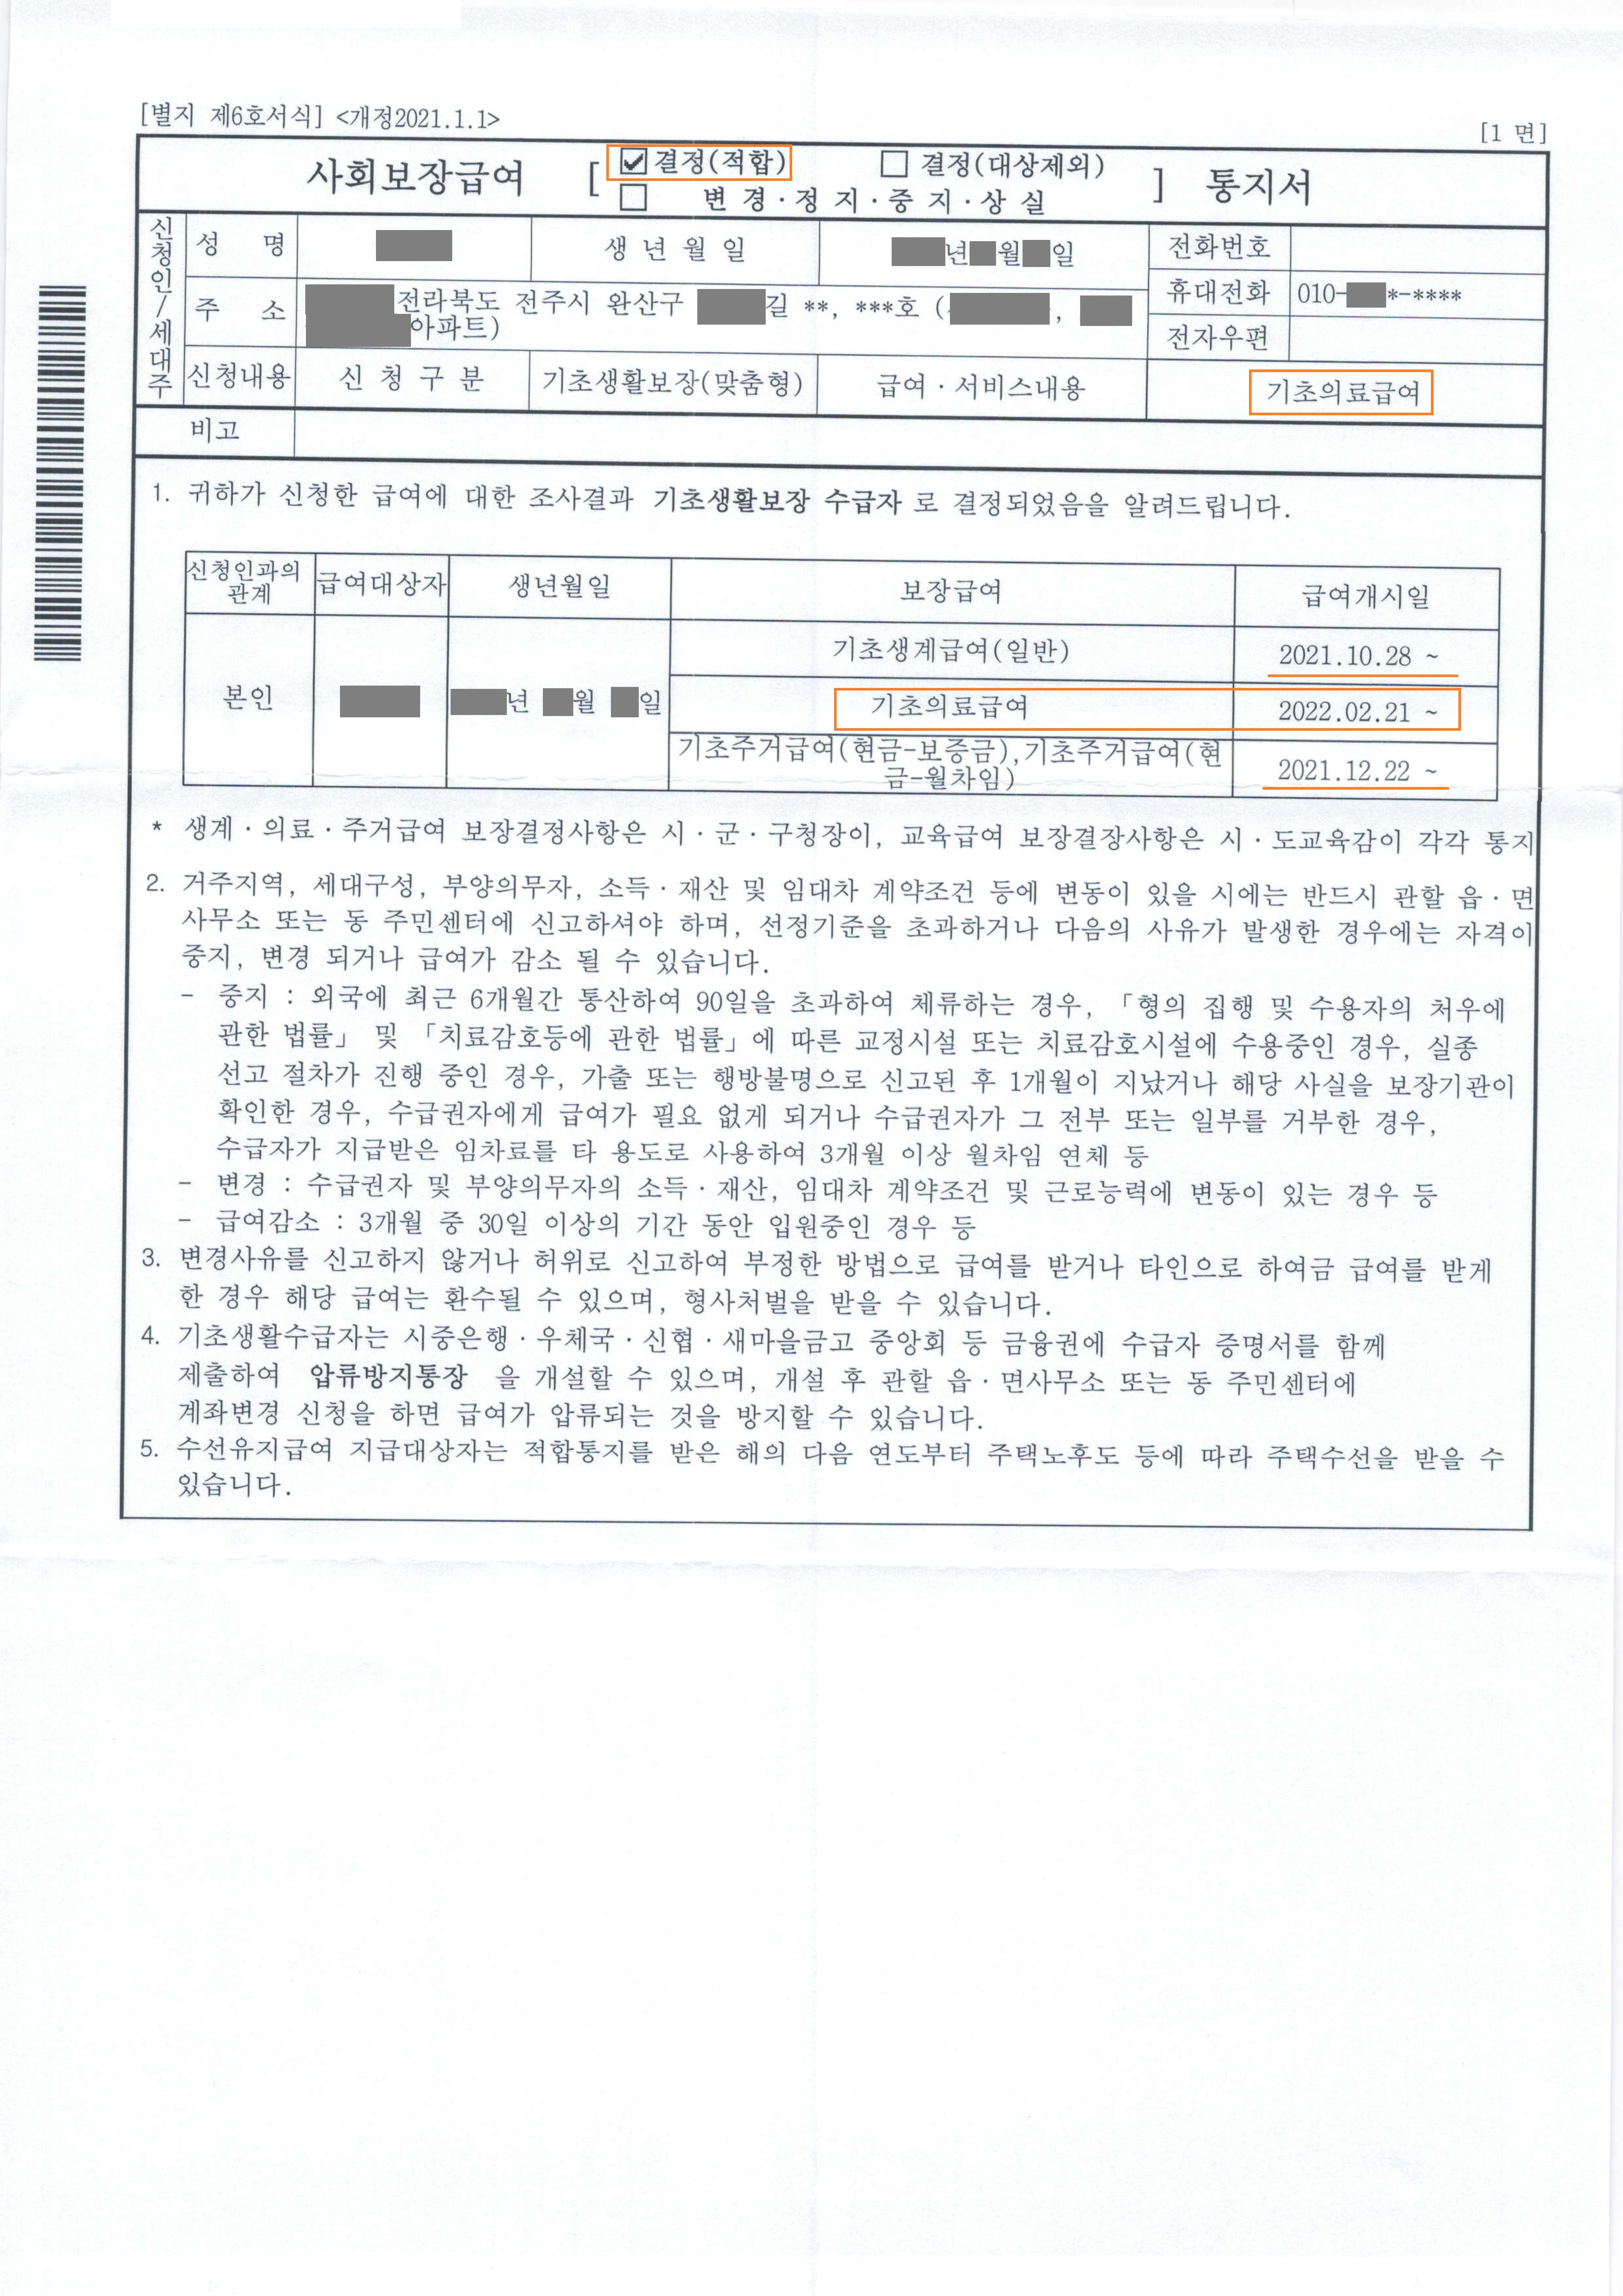 22.3.28_공소현(의료급여결정통지서)_공개용1.jpg